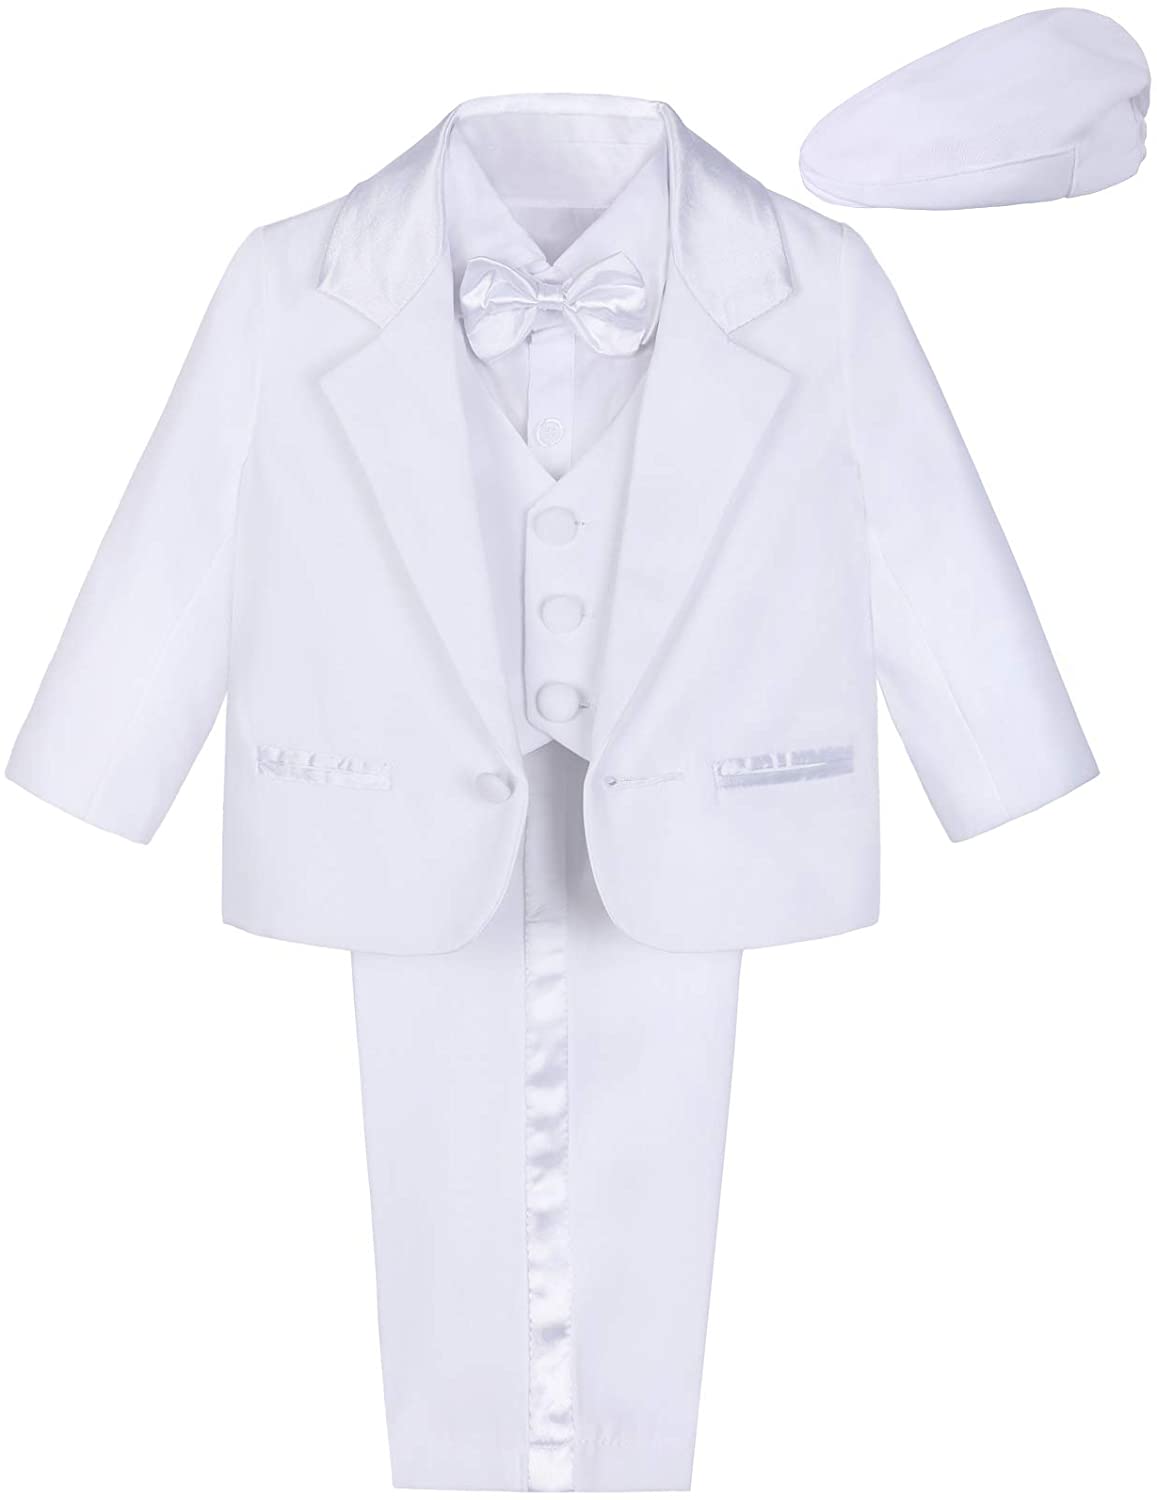 A&J DESIGN Baby Boys Suit, 5Pcs Gentleman Tuxedos Outfits Jacket & Shirt & Vest & Pants & Hat